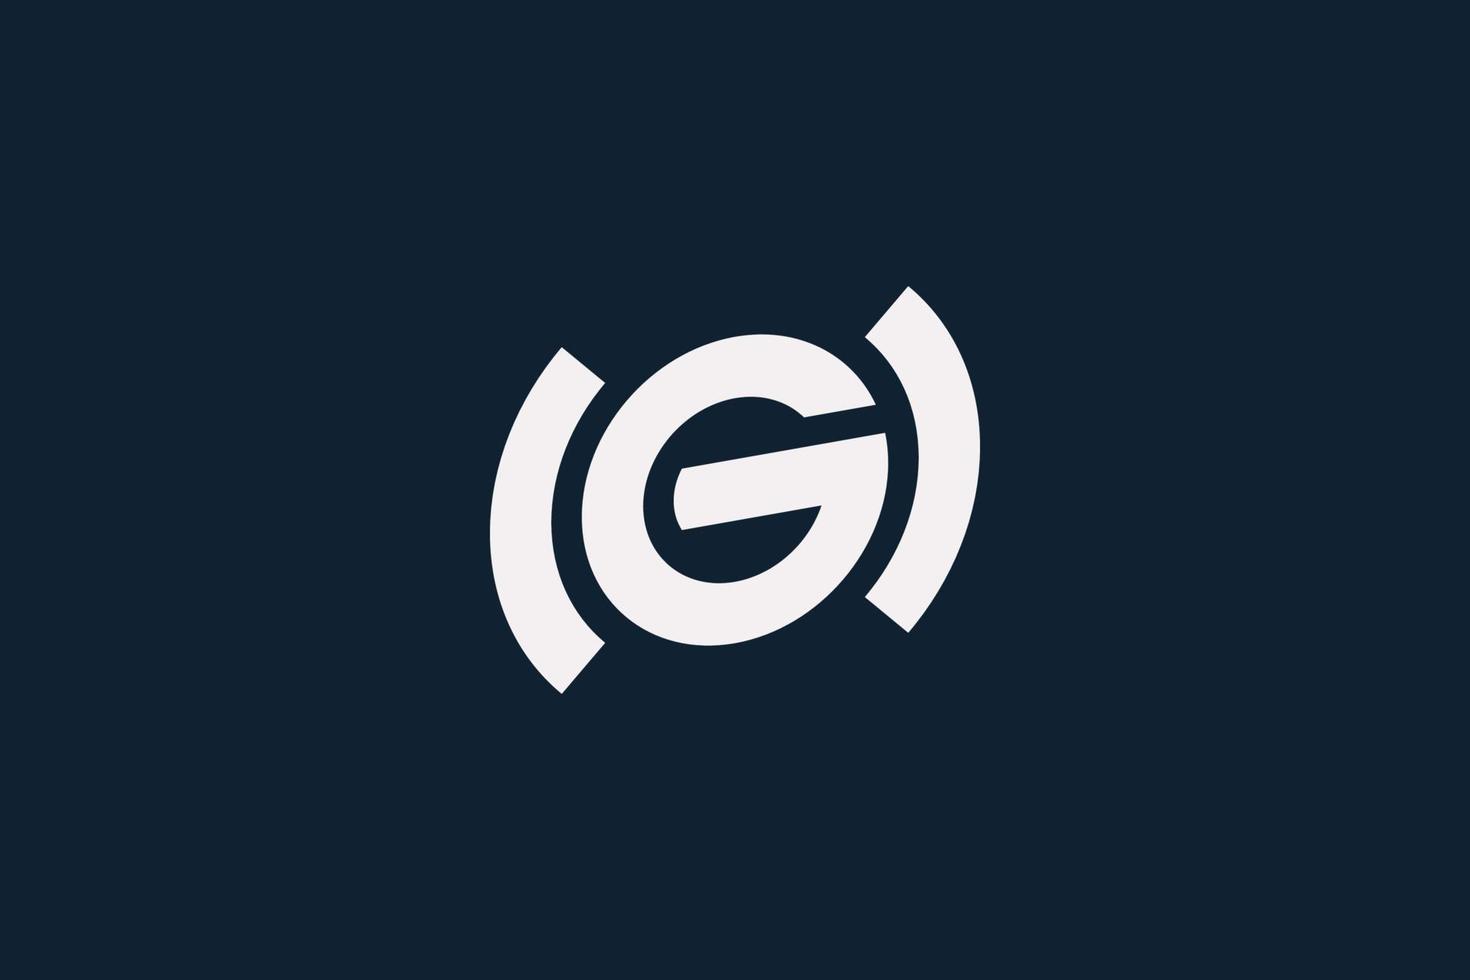 logo gh ou hg simple et dynamique pour toute entreprise. vecteur